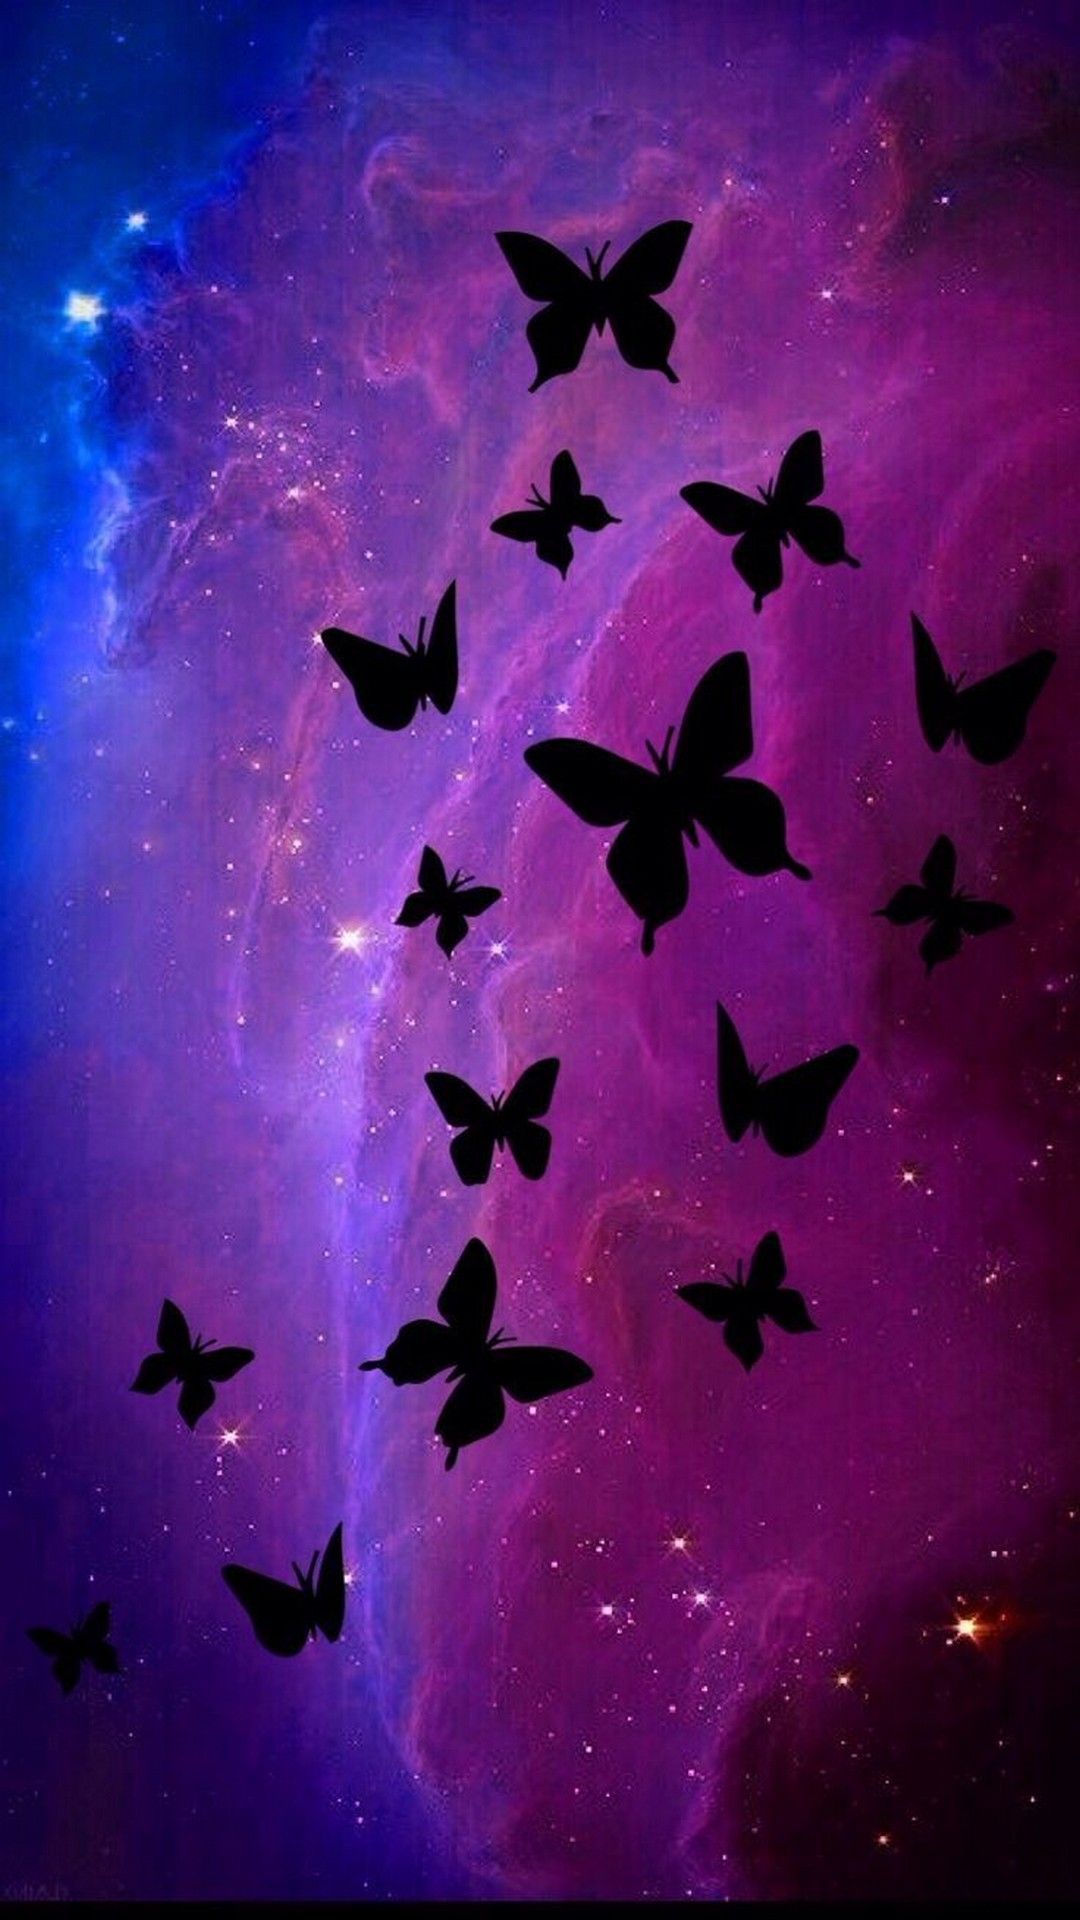 والپیپر زیبا و دیدنی از پروانه های سیاه با پس زمینه کهکشانی 